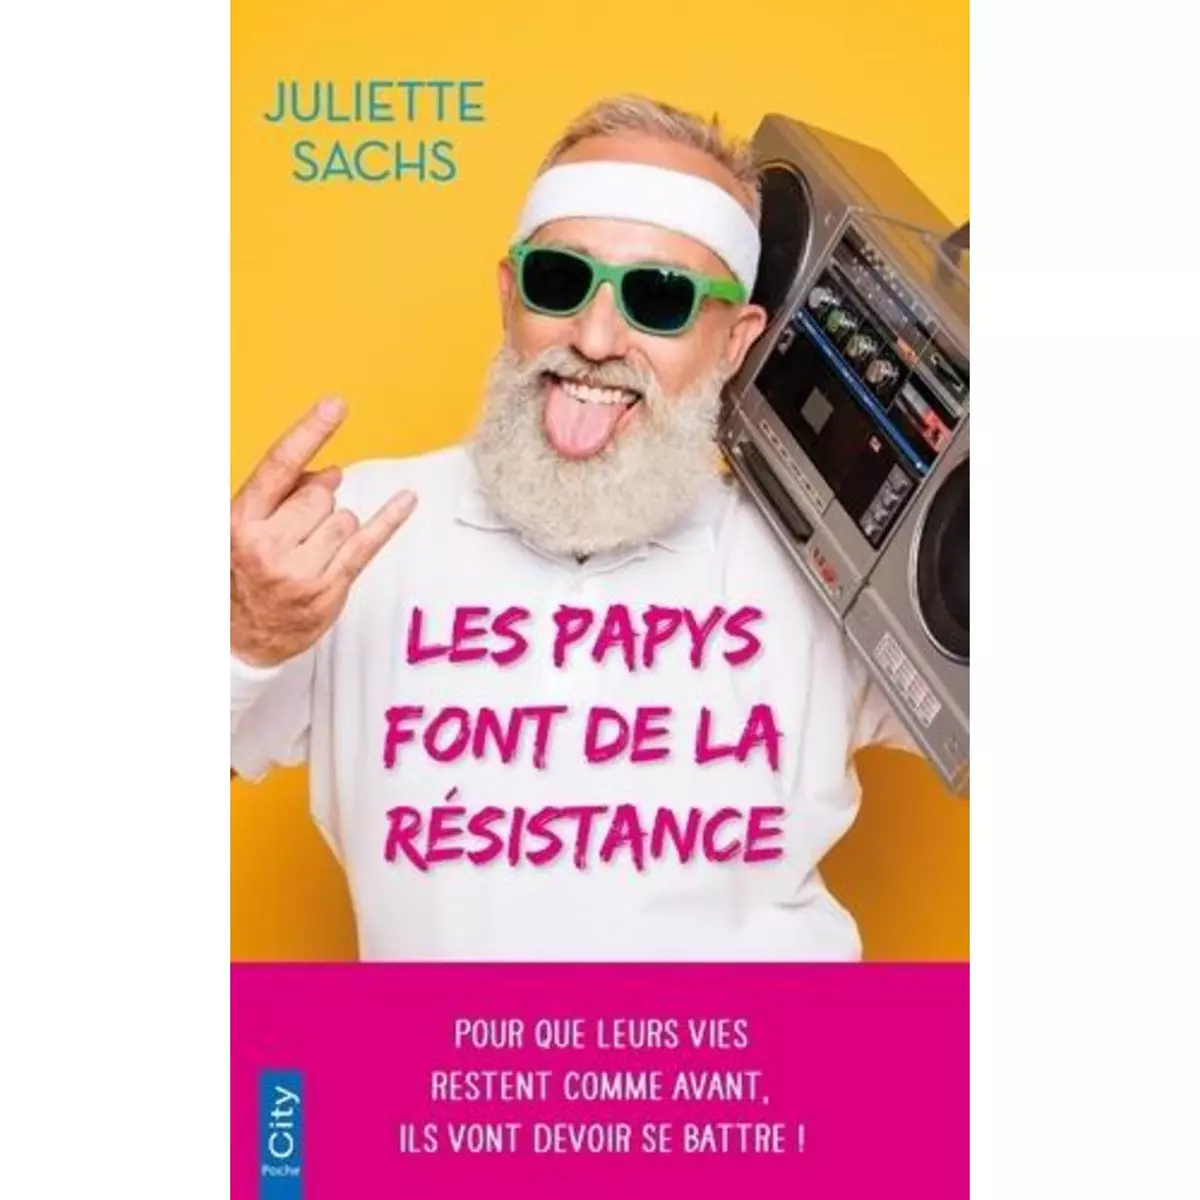  LES PAPYS FONT DE LA RESISTANCE, Sachs Juliette